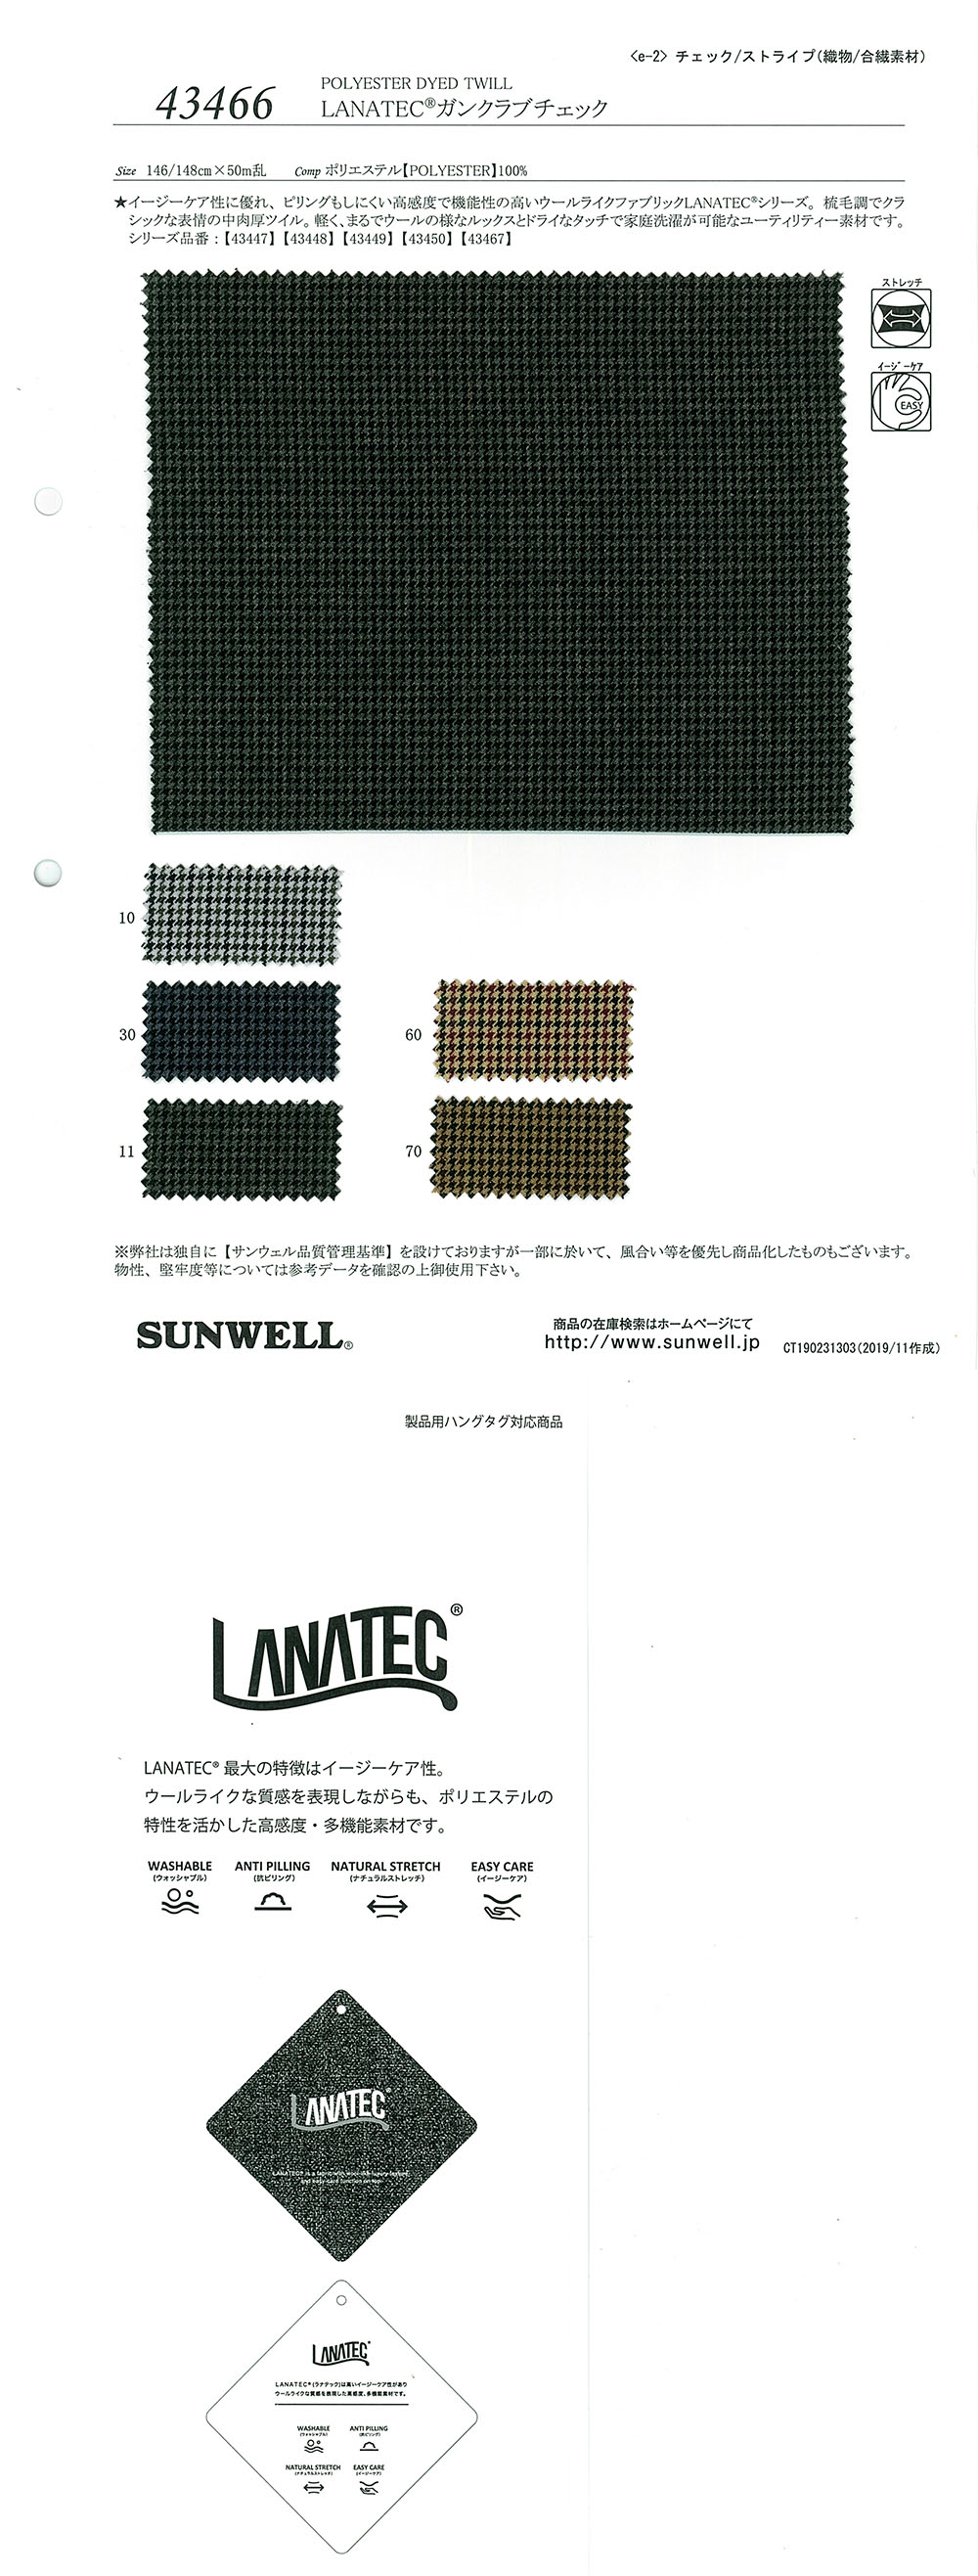 43466 LANATEC(R)双色方格[面料] SUNWELL